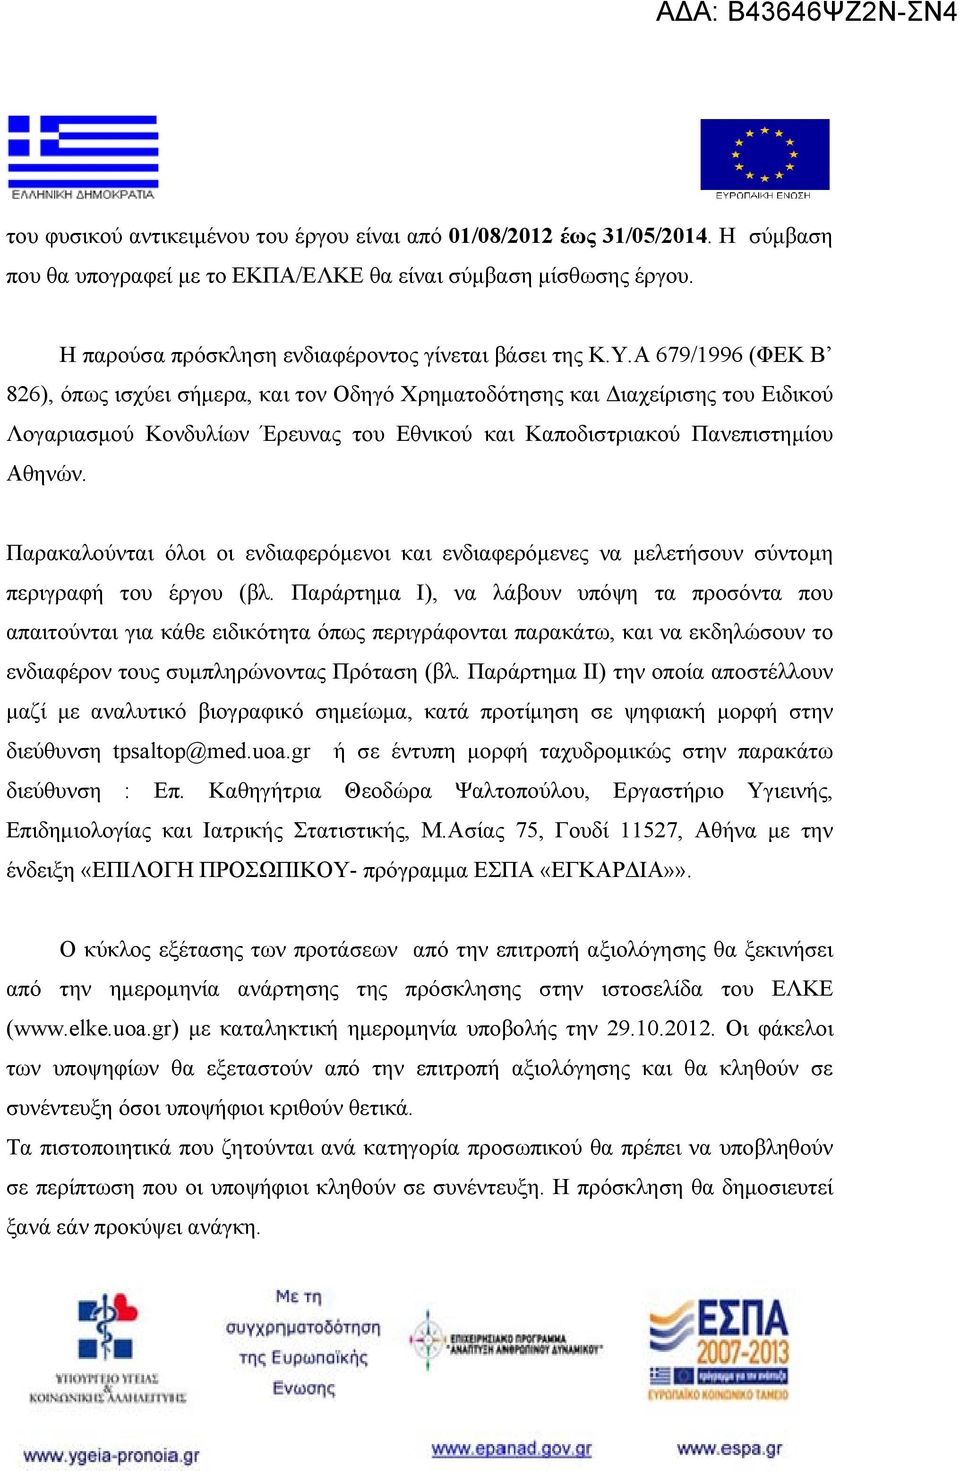 Α 679/1996 (ΦΕΚ Β 826), όπως ισχύει σήμερα, και τον Οδηγό Χρηματοδότησης και Διαχείρισης του Ειδικού Λογαριασμού Κονδυλίων Έρευνας του Εθνικού και Καποδιστριακού Πανεπιστημίου Αθηνών.